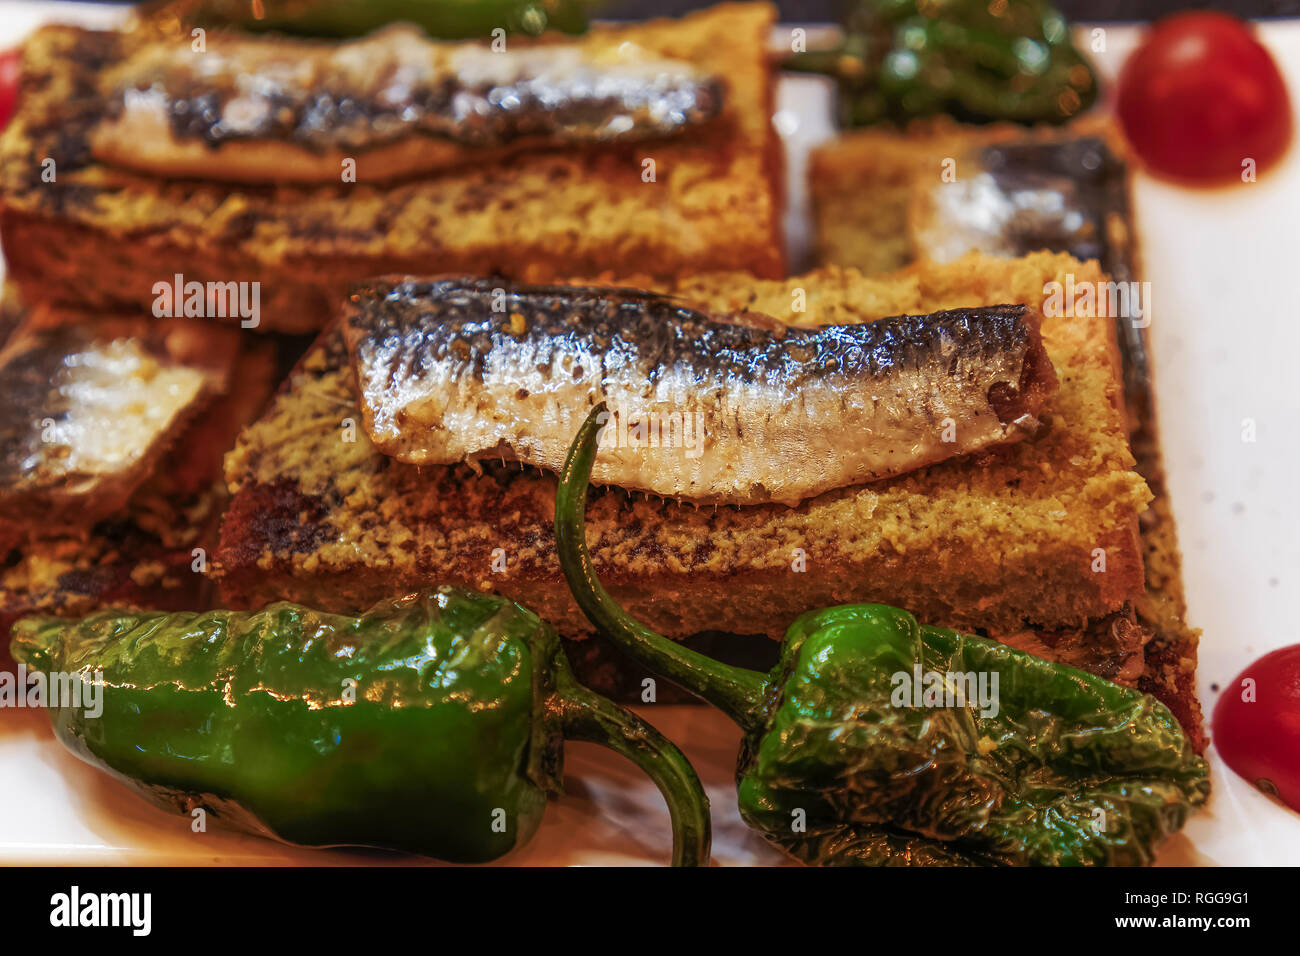 Portugal Lisbonne sardines traditionnel servi la nourriture.Libre Vue de dessus des sardines grillées sur du pain grillé avec de l'huile d'olive poivrons tomates et garnir Banque D'Images